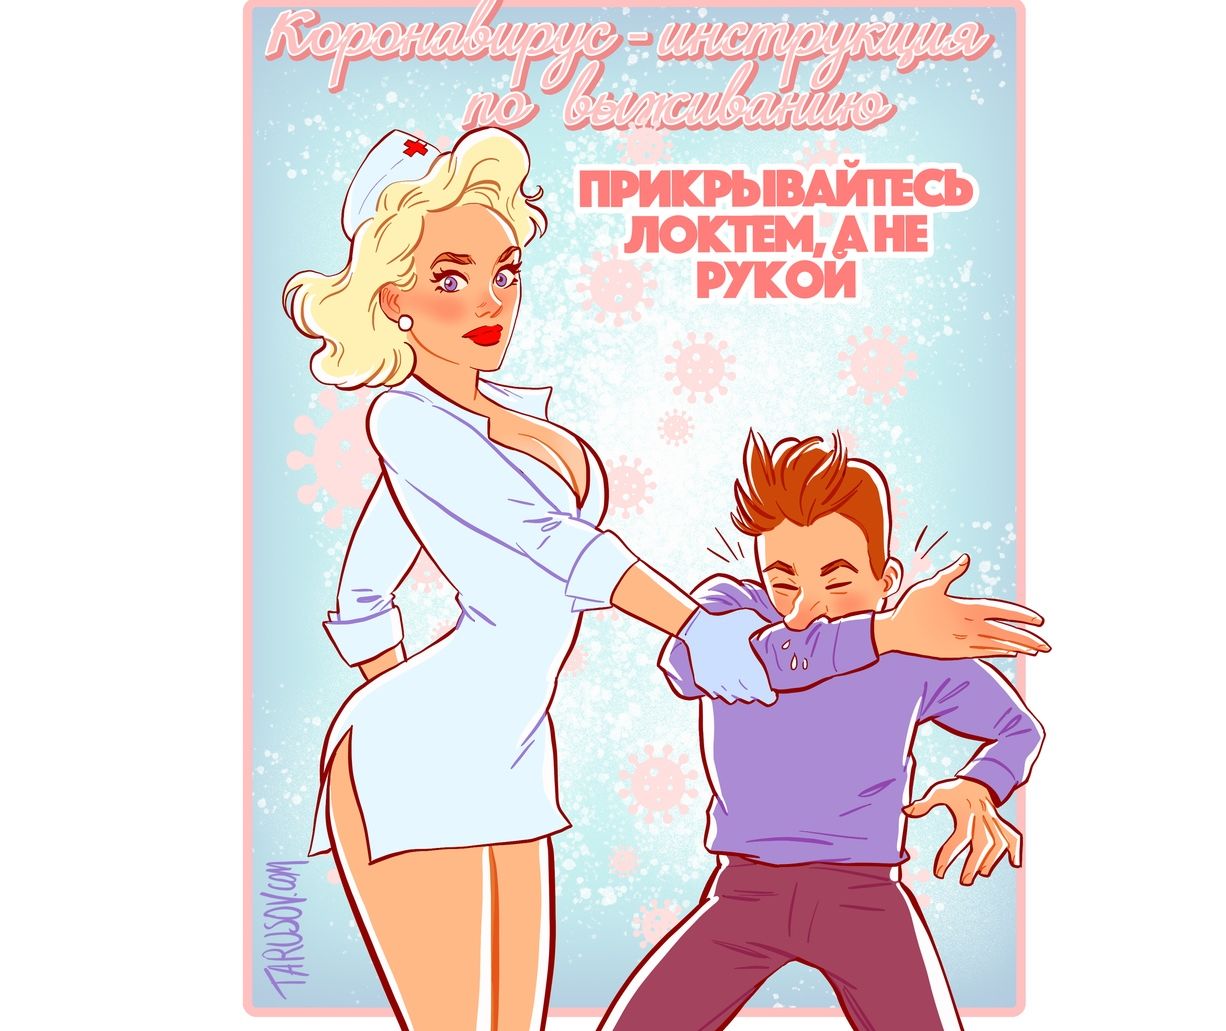 Художник из Рыбинска создал пин-ап памятку по защите от коронавируса